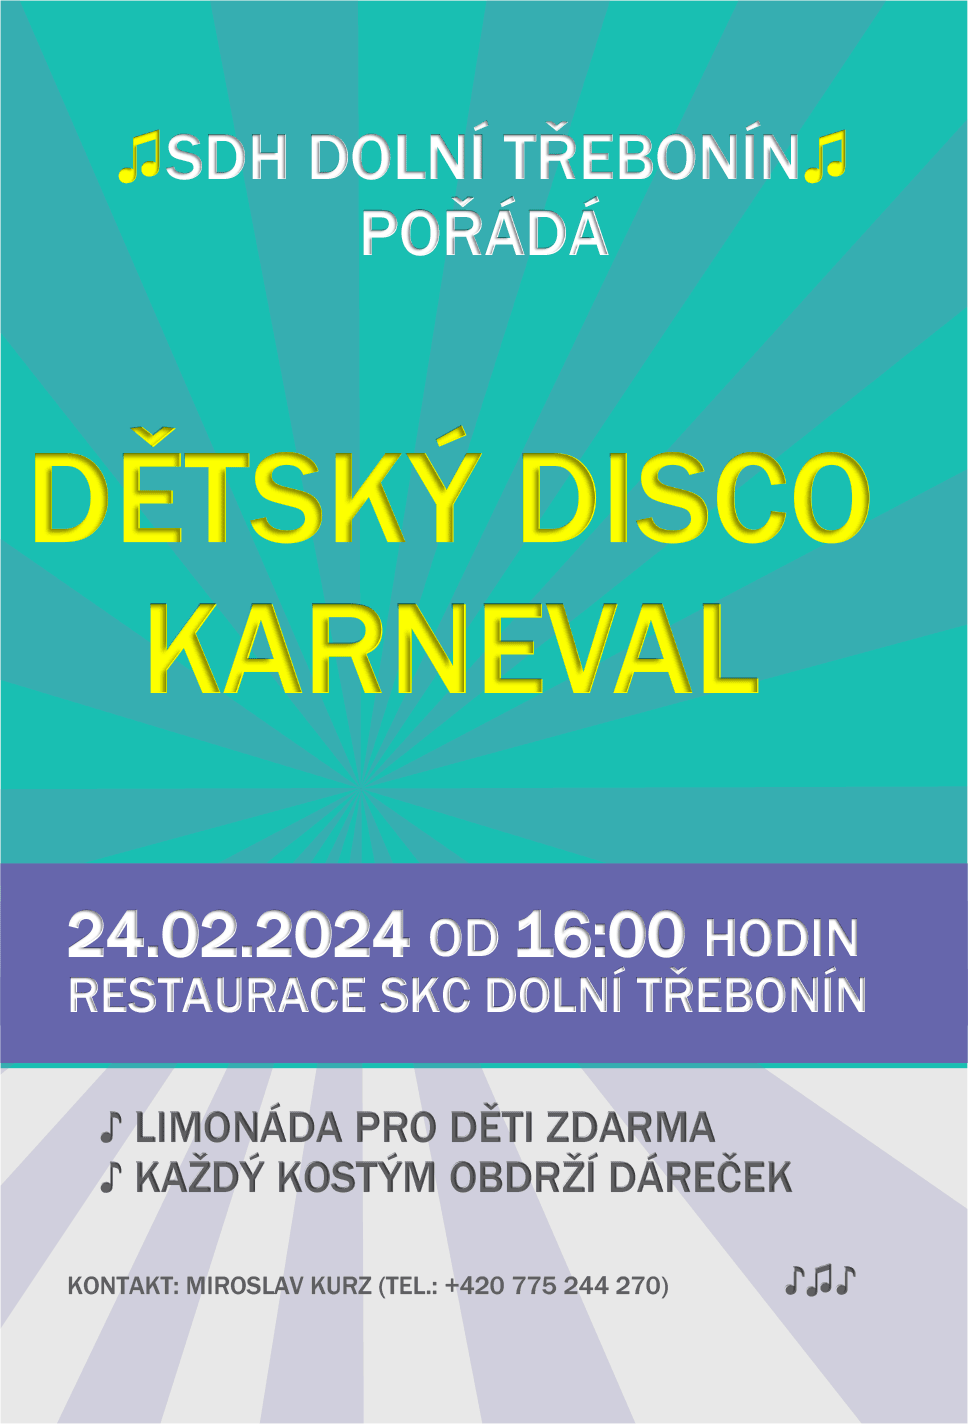 Dětský disco karneval 24. 2. 2024